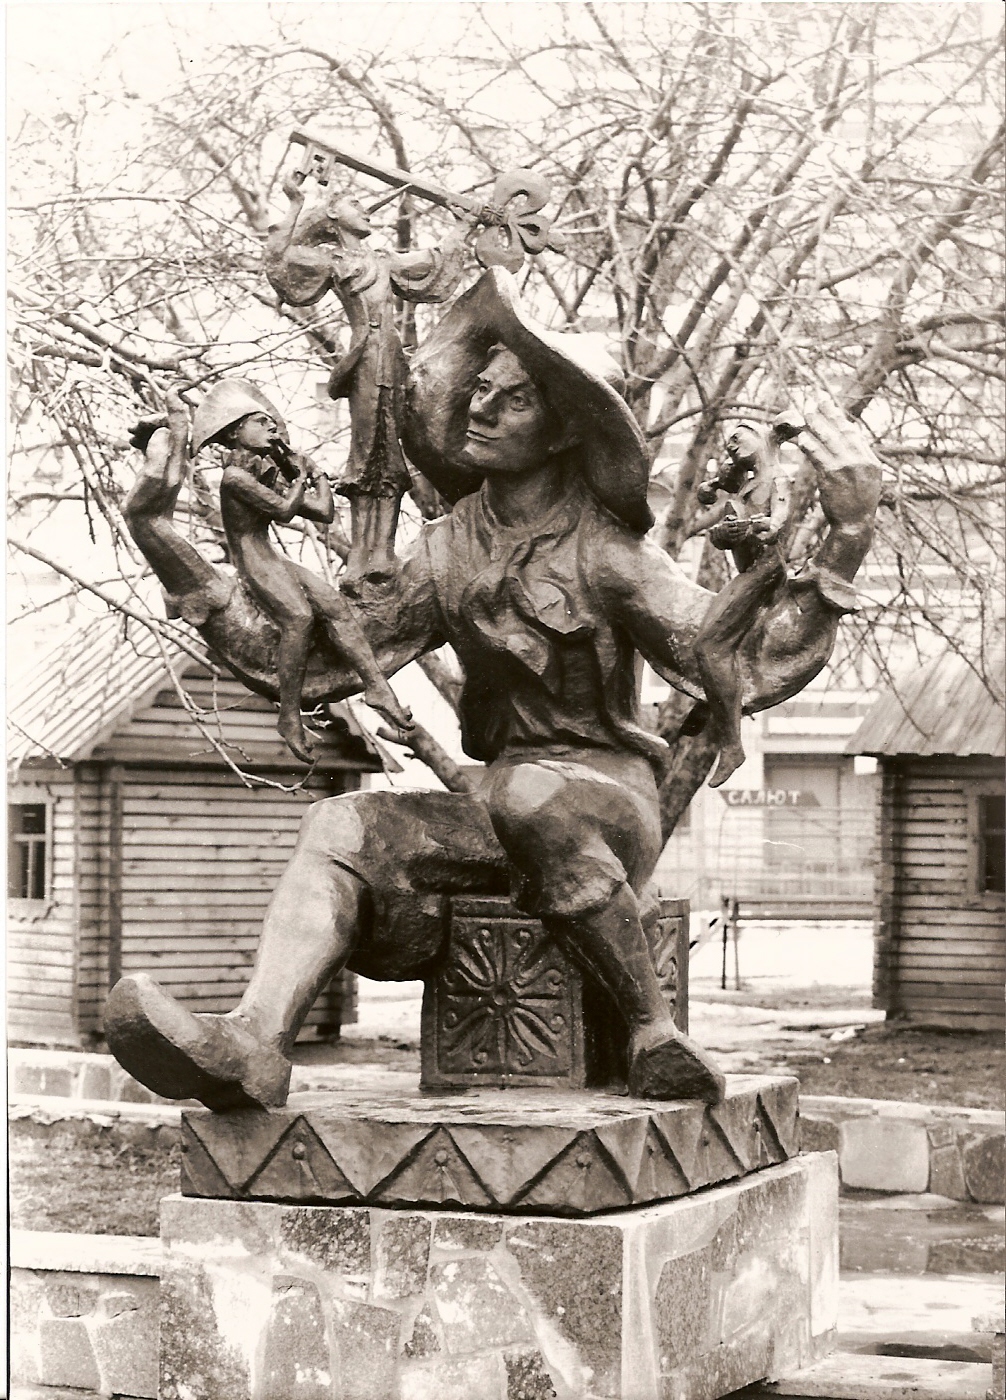 Fountain 'Pinocchio',
      kindergarten,
      Shitomir, Ukraine,
      120x165x220,
      copper, 1982